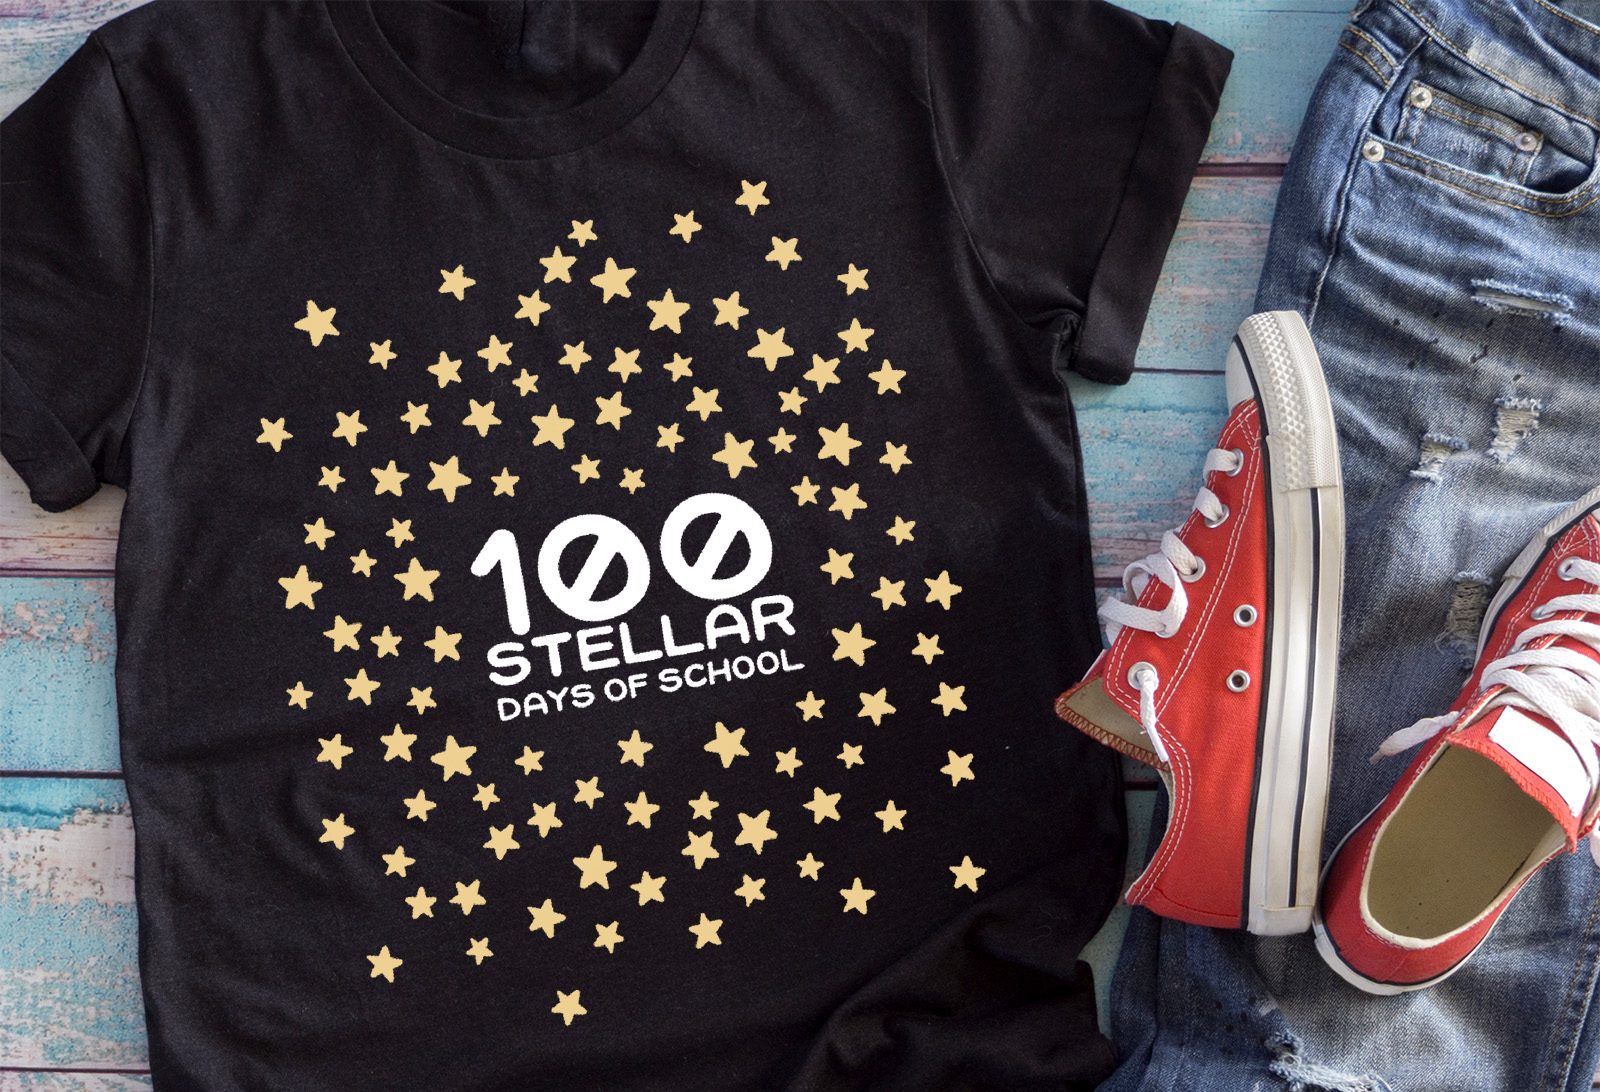 100 Stellar Days of School